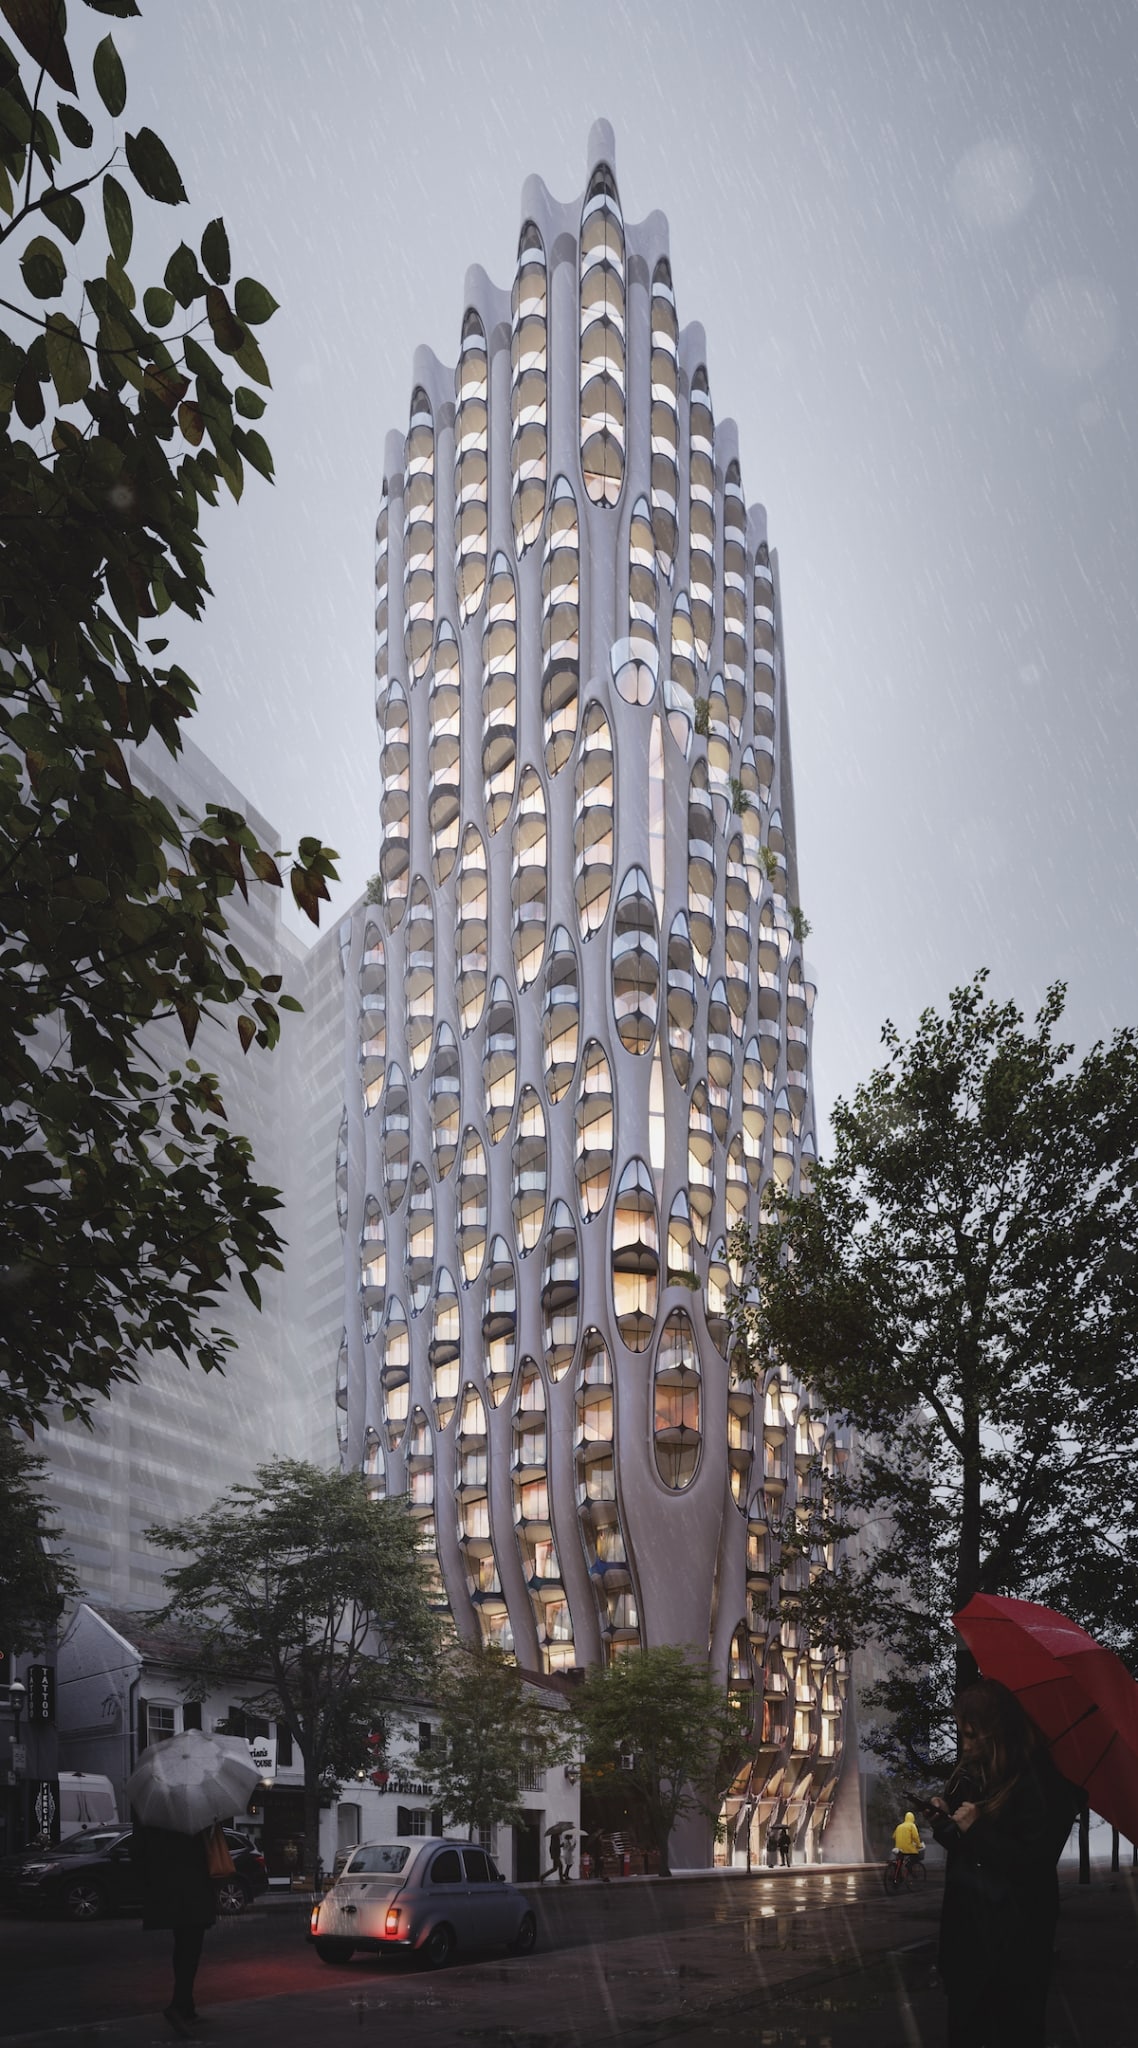 Dreamy High Rise: O ουρανοξύστης στο Τορόντο που μοιάζει να εναρμονίζεται με τα σύννεφα